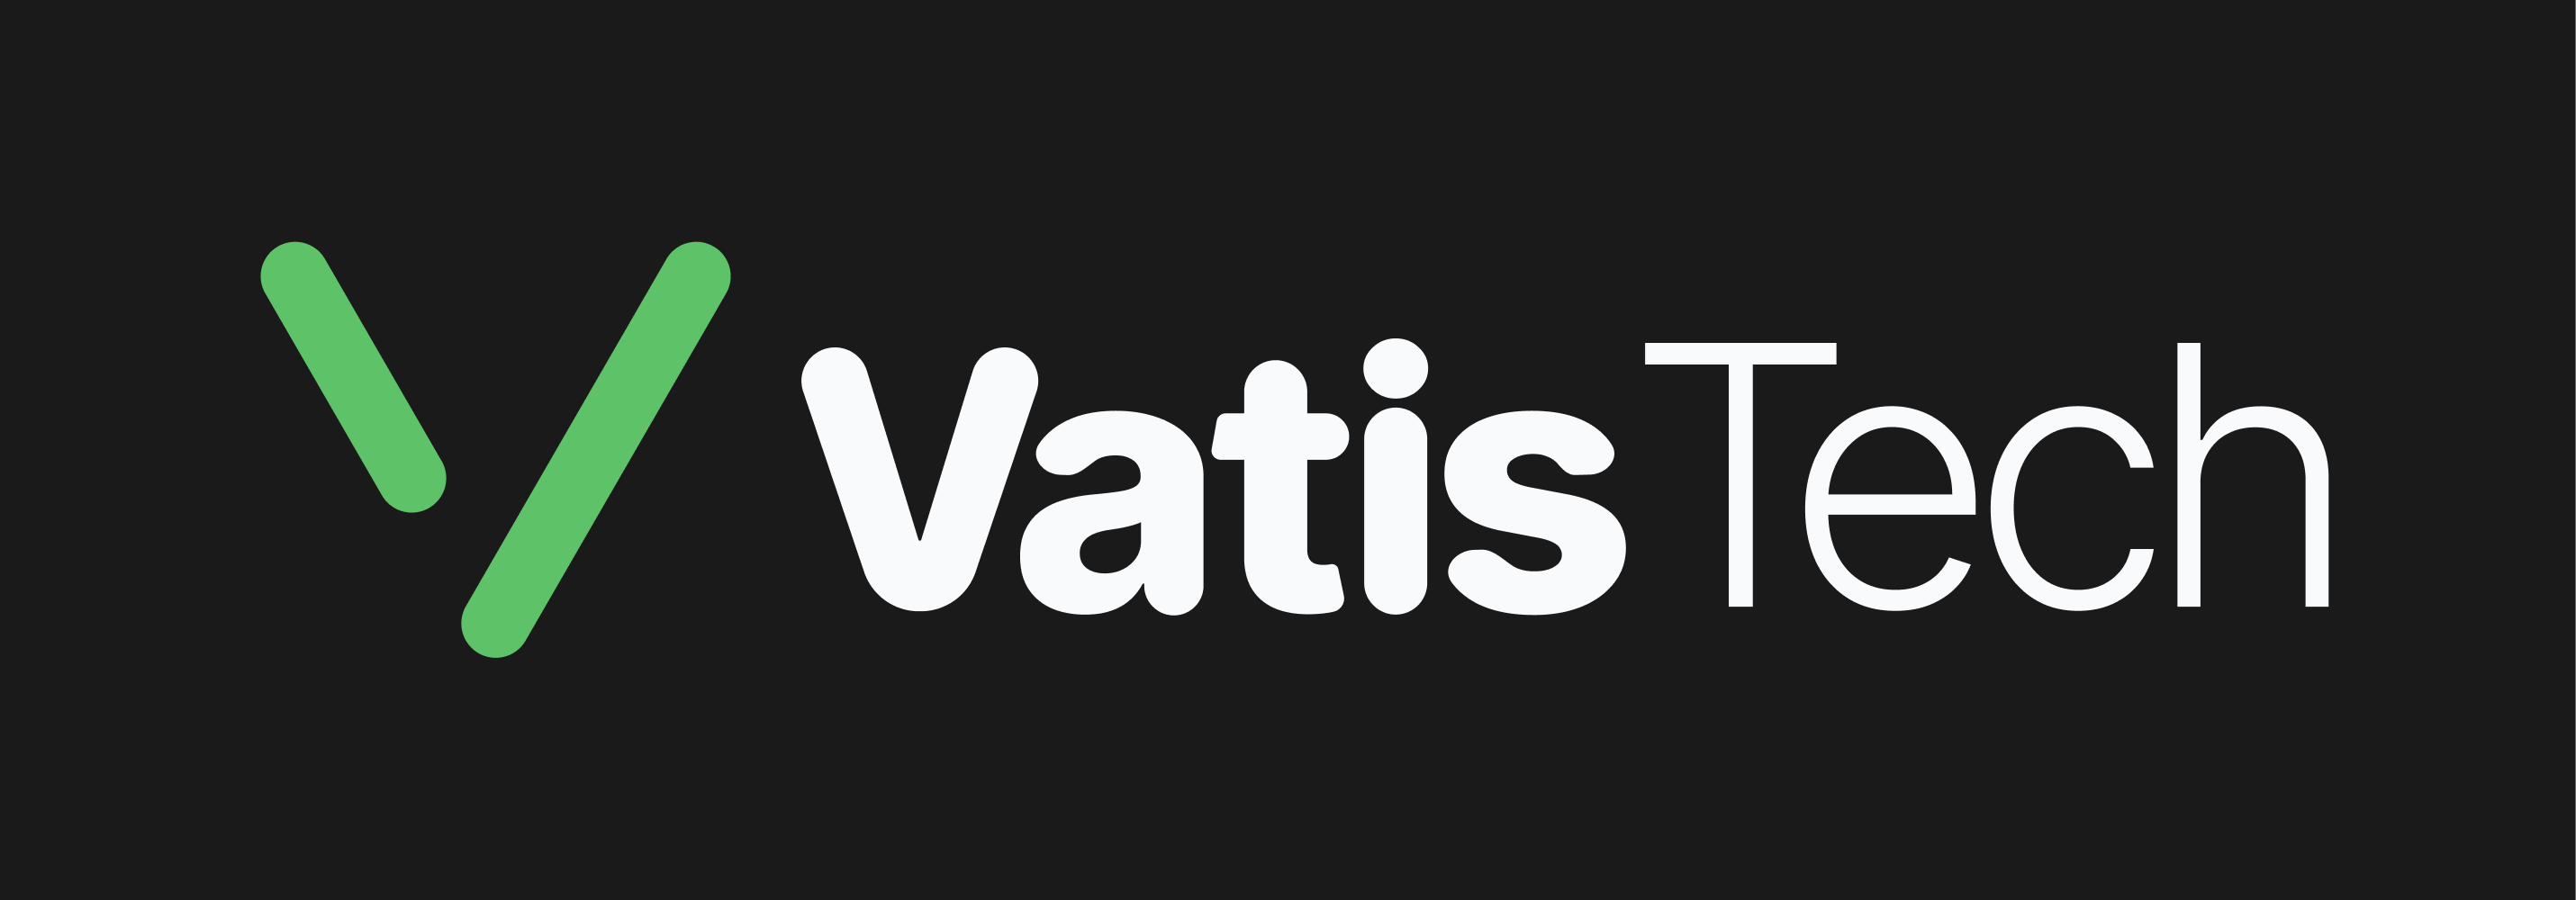 Vatis Tech Resources